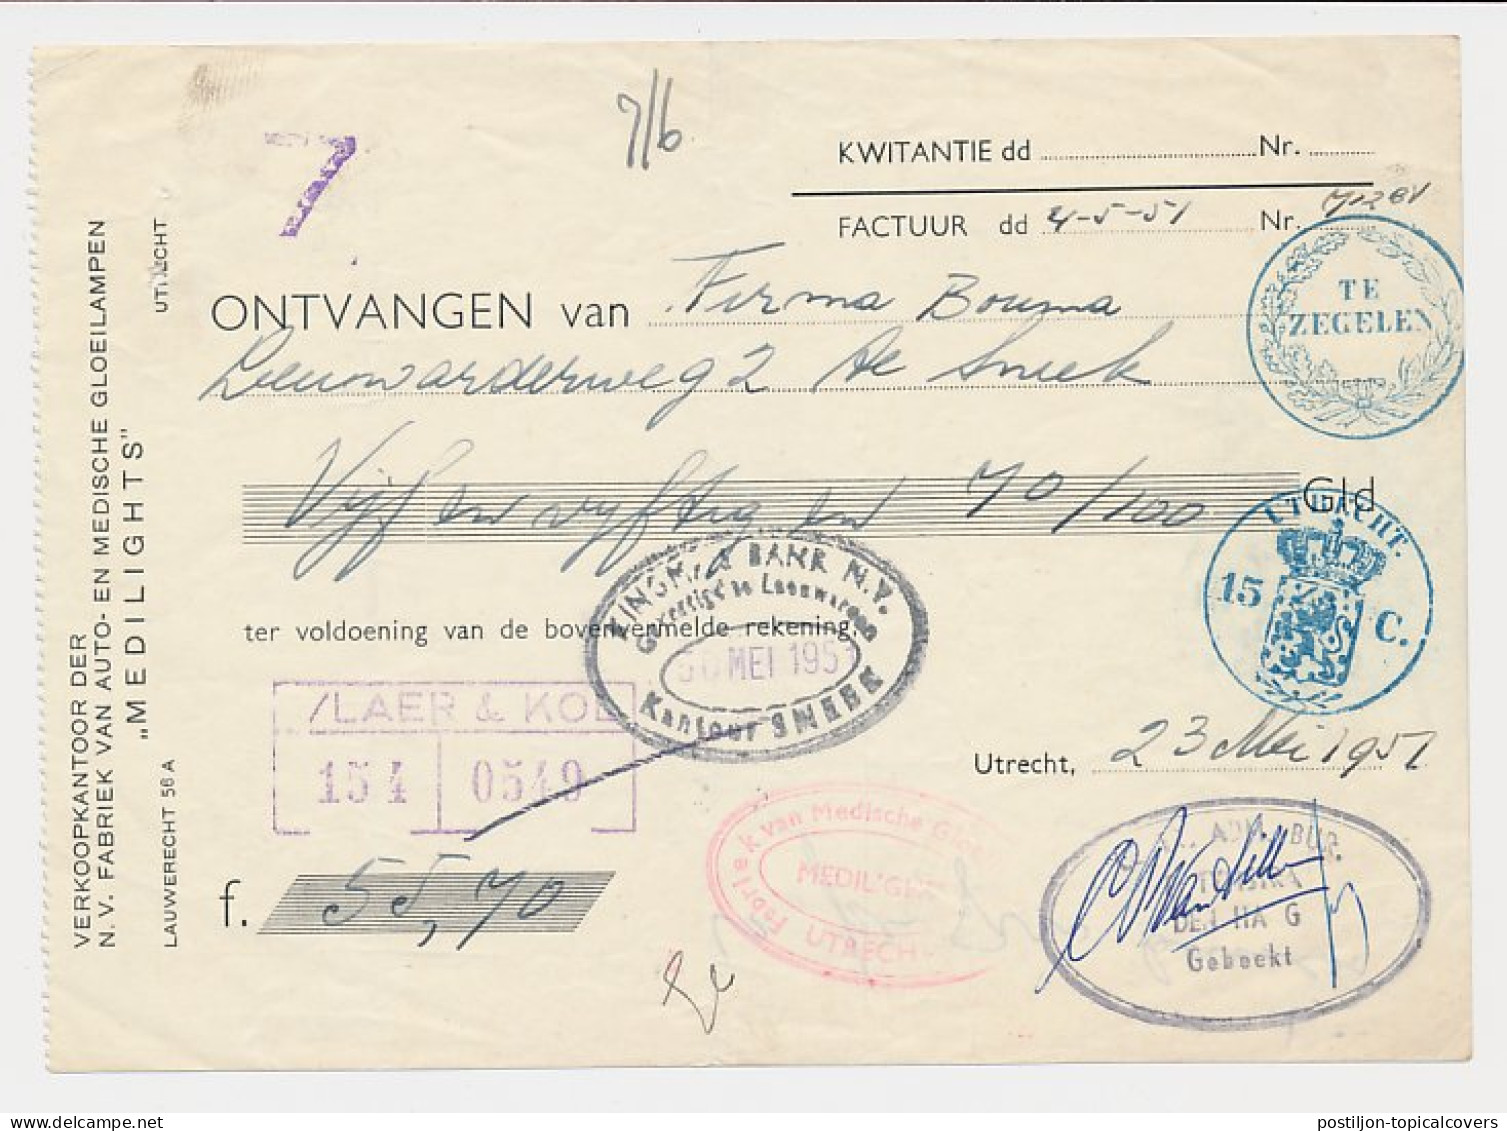 Fiscaal / Revenue - 15 C. Utrecht - 1951 - Revenue Stamps